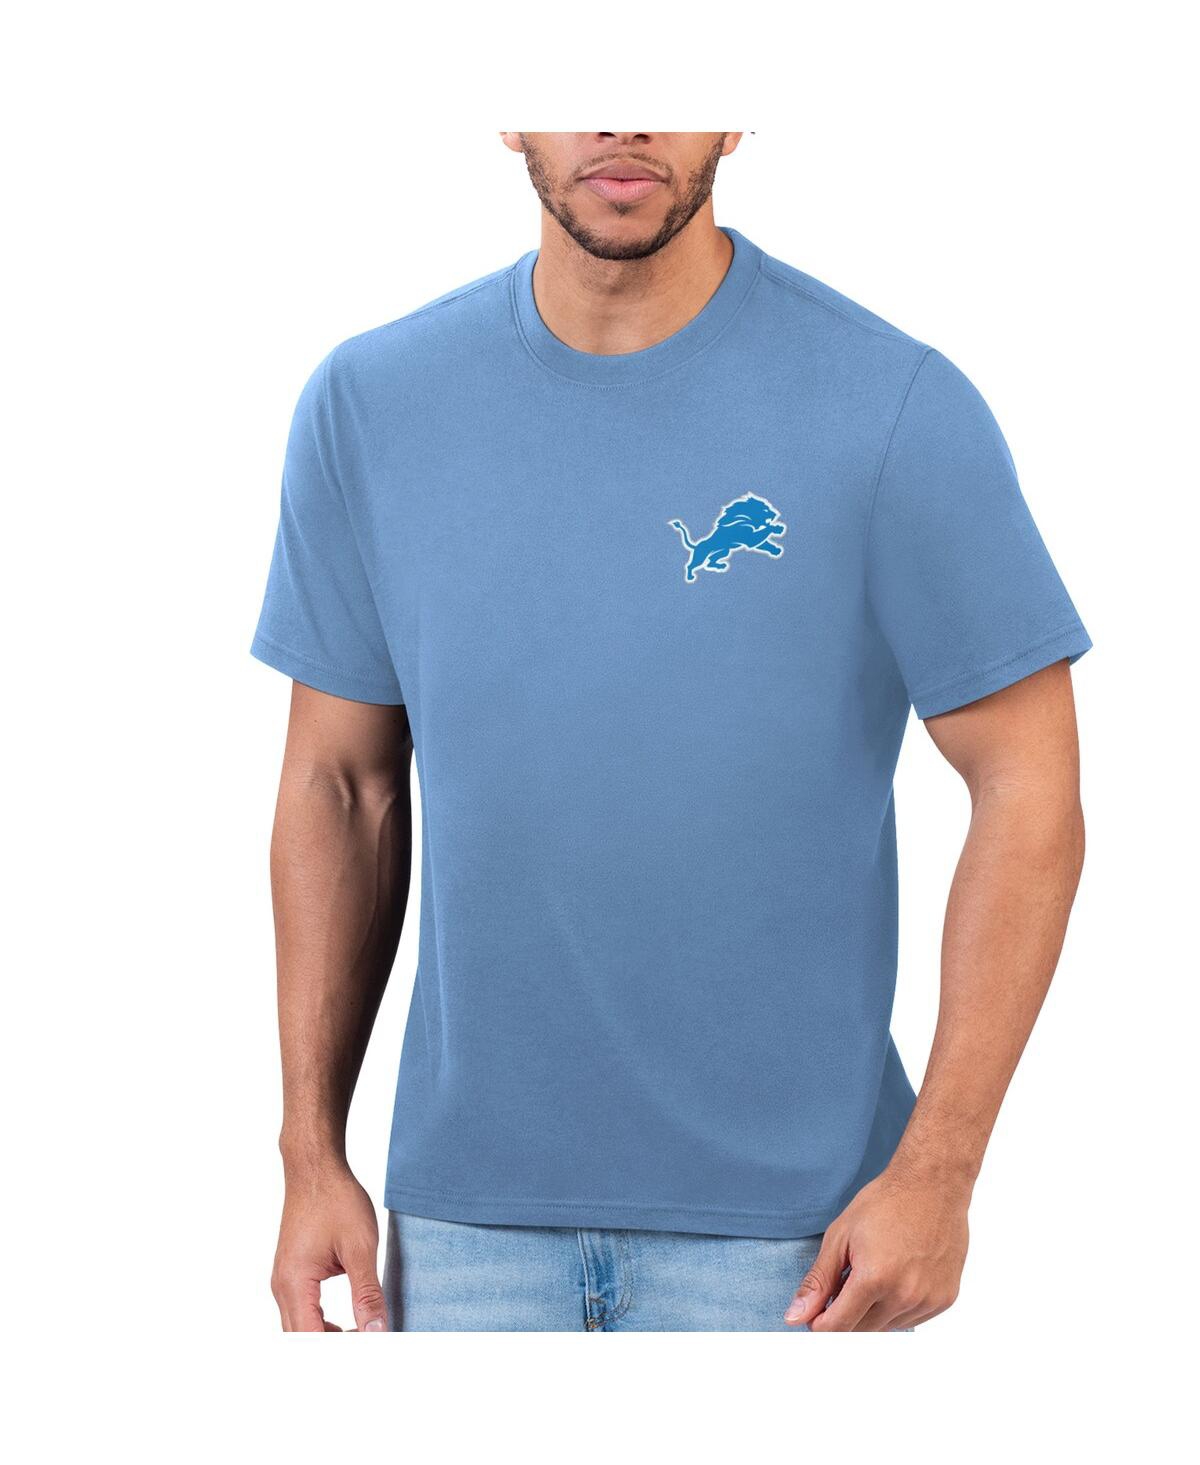 Men's Margaritaville Blue Detroit Lions T-shirt - Blue